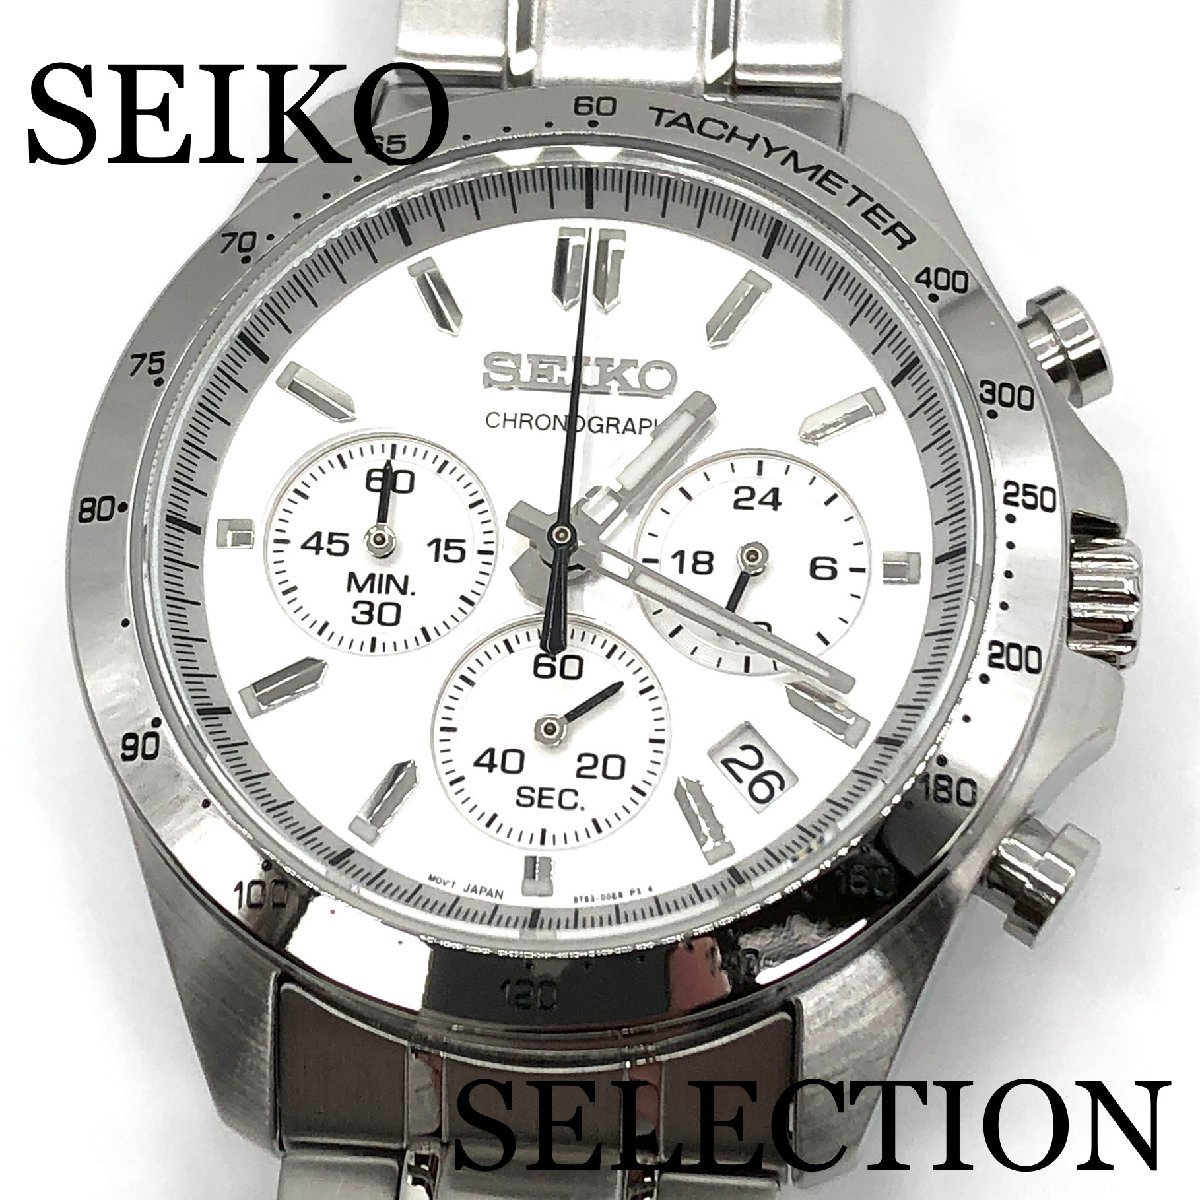 新品正規品『SEIKO SELECTION』セイコー セレクション クロノグラフ 腕時計 メンズ SBTR009【送料無料】